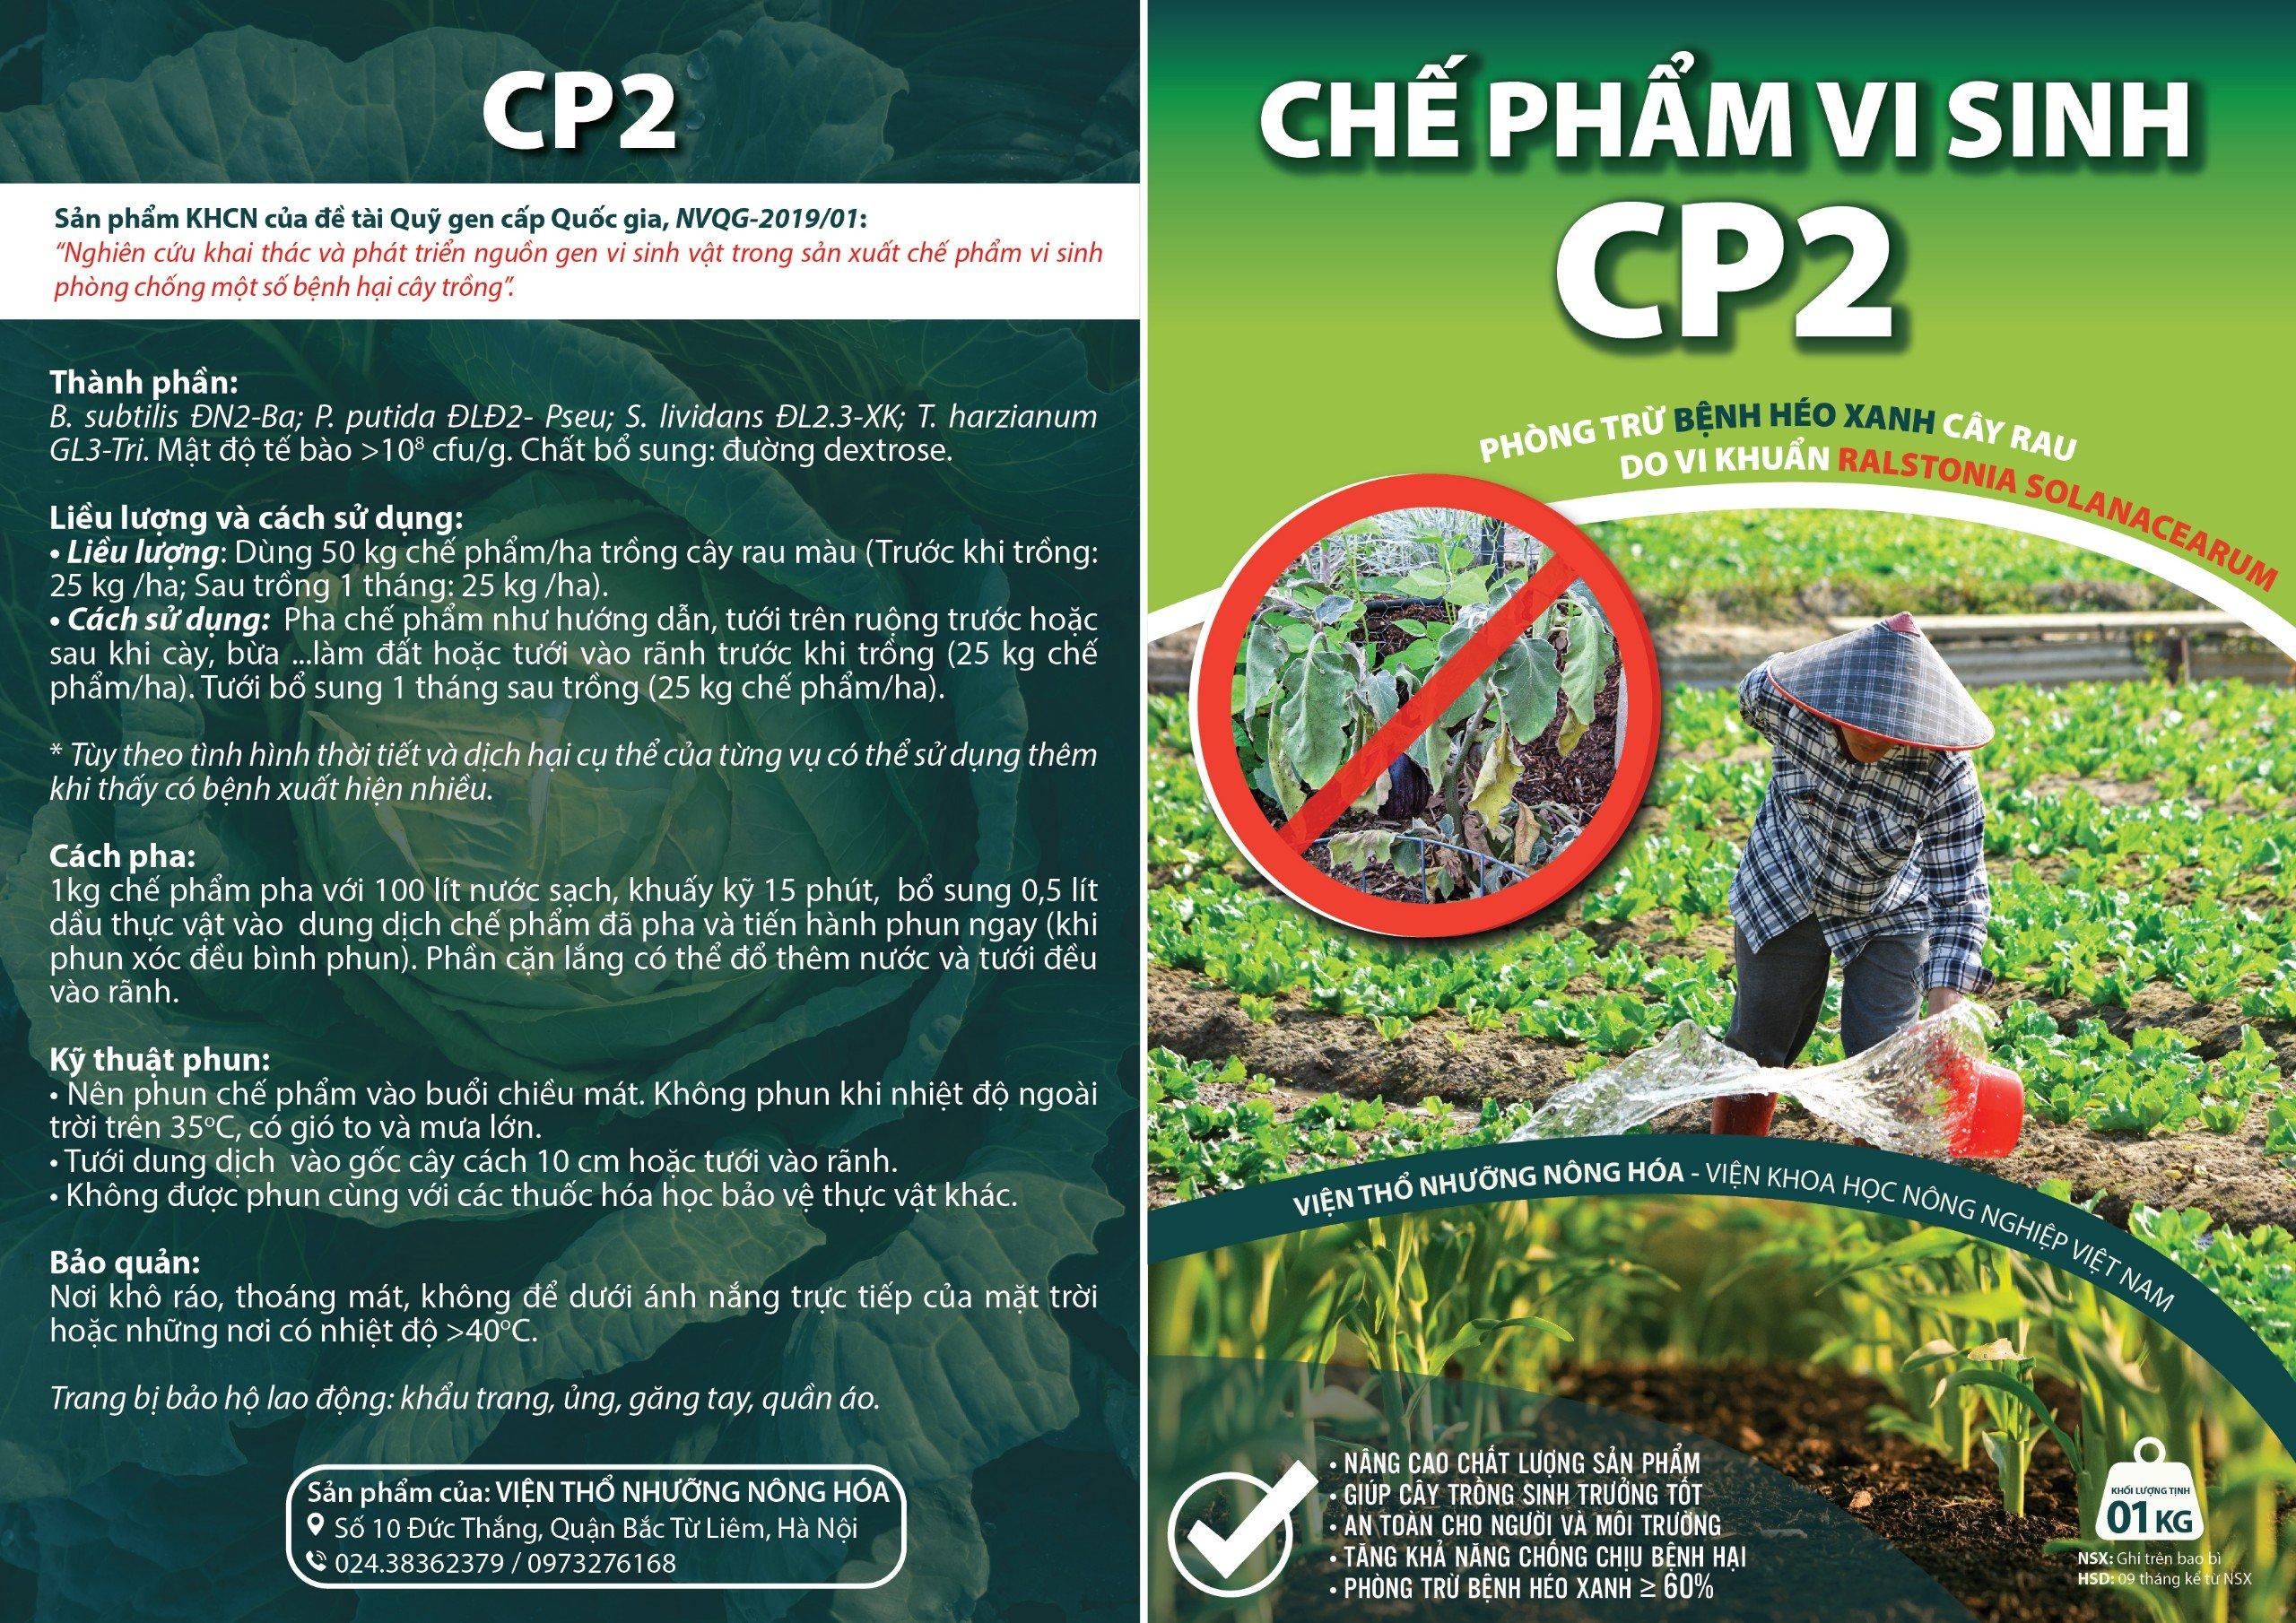 Chế phẩm vi sinh CP2 (Phòng trừ bệnh héo xanh cây rau do vi khuẩn Ralstonia Solancearum)